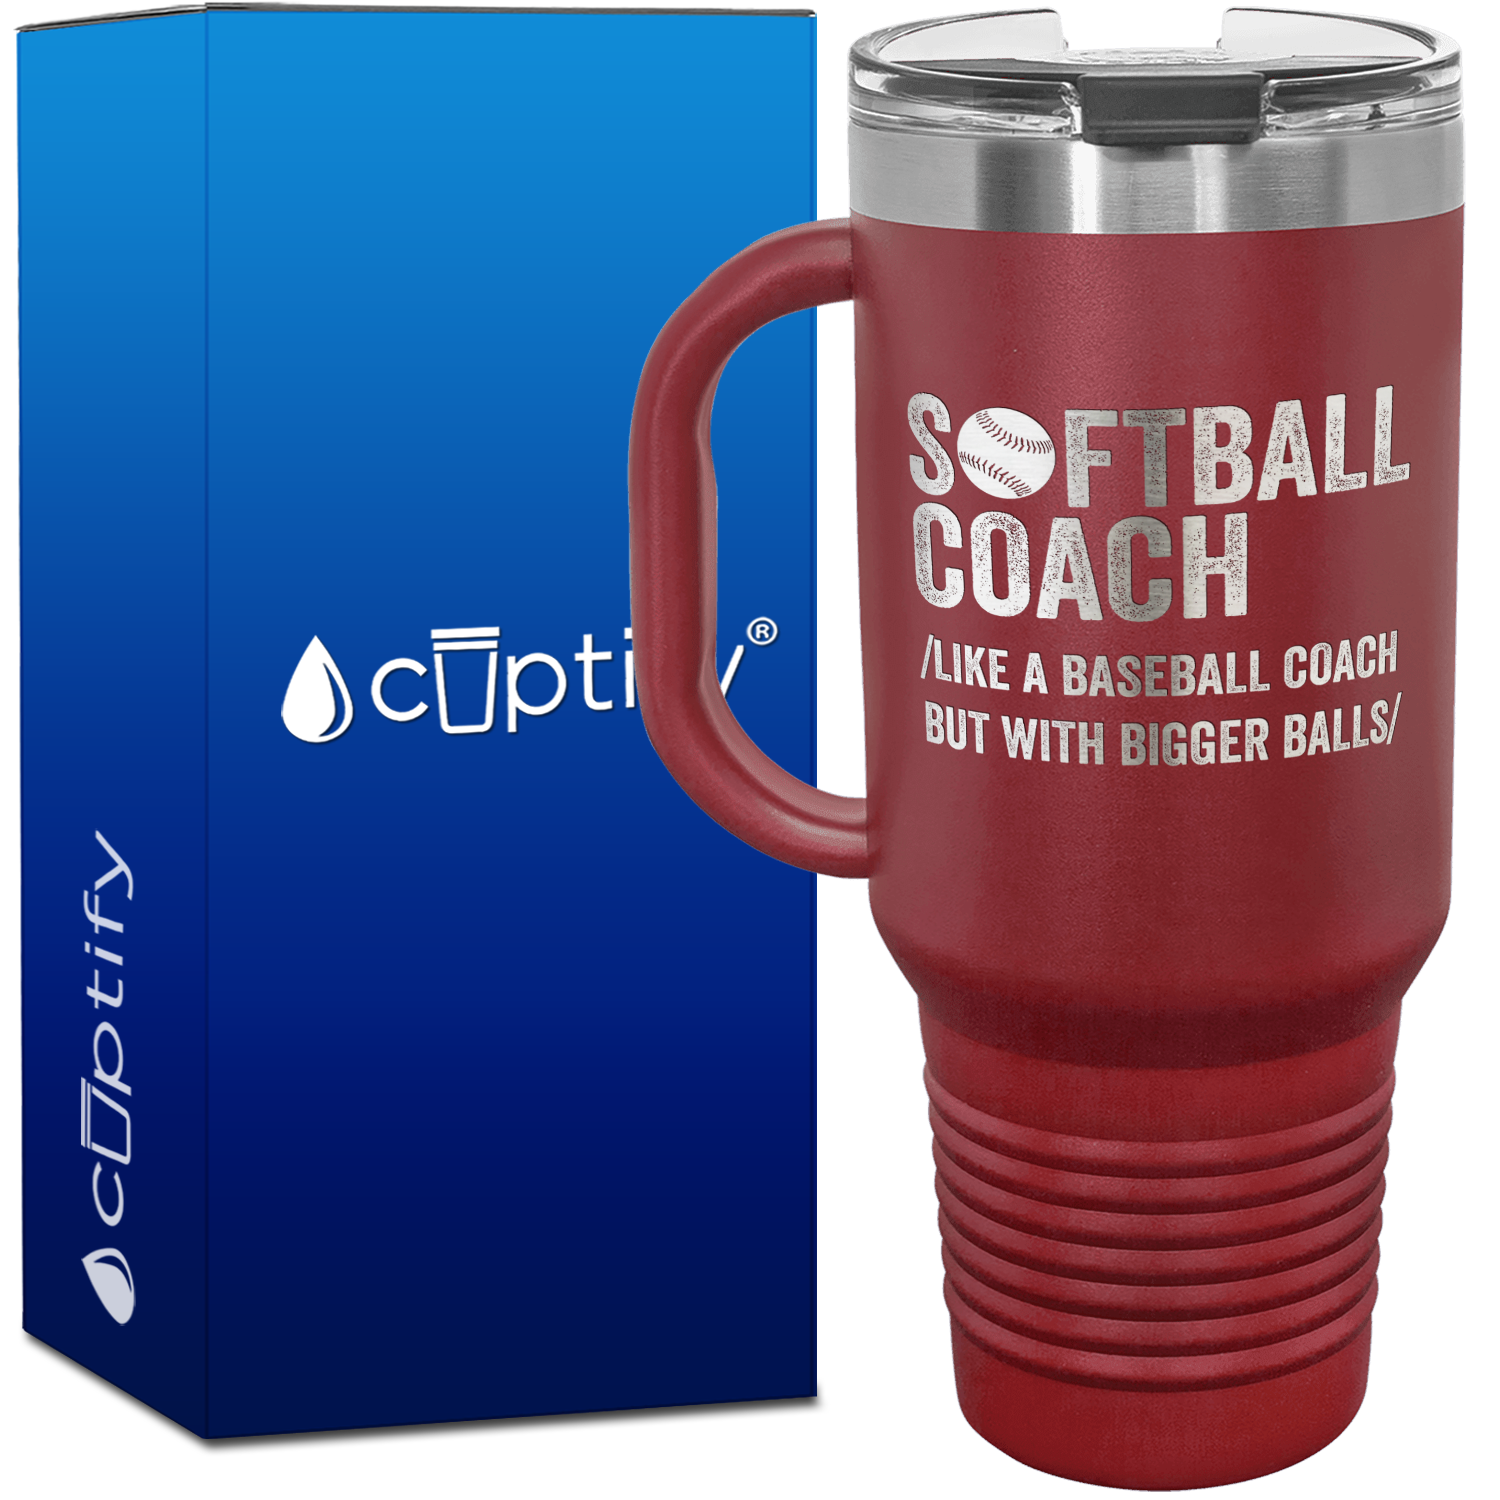 Softball Coach 40oz Coach Travel Mug